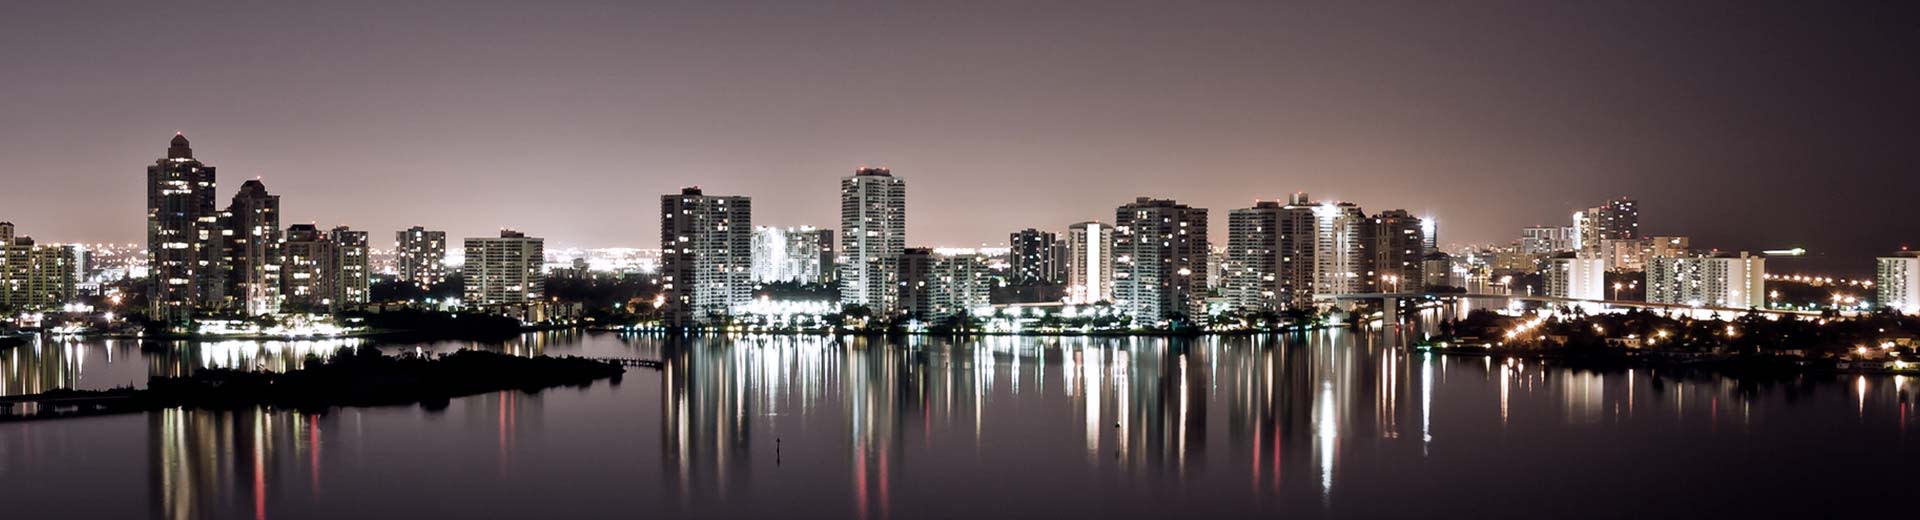 La nuit, l'horizon de Fort Lauderdale illumine le ciel.